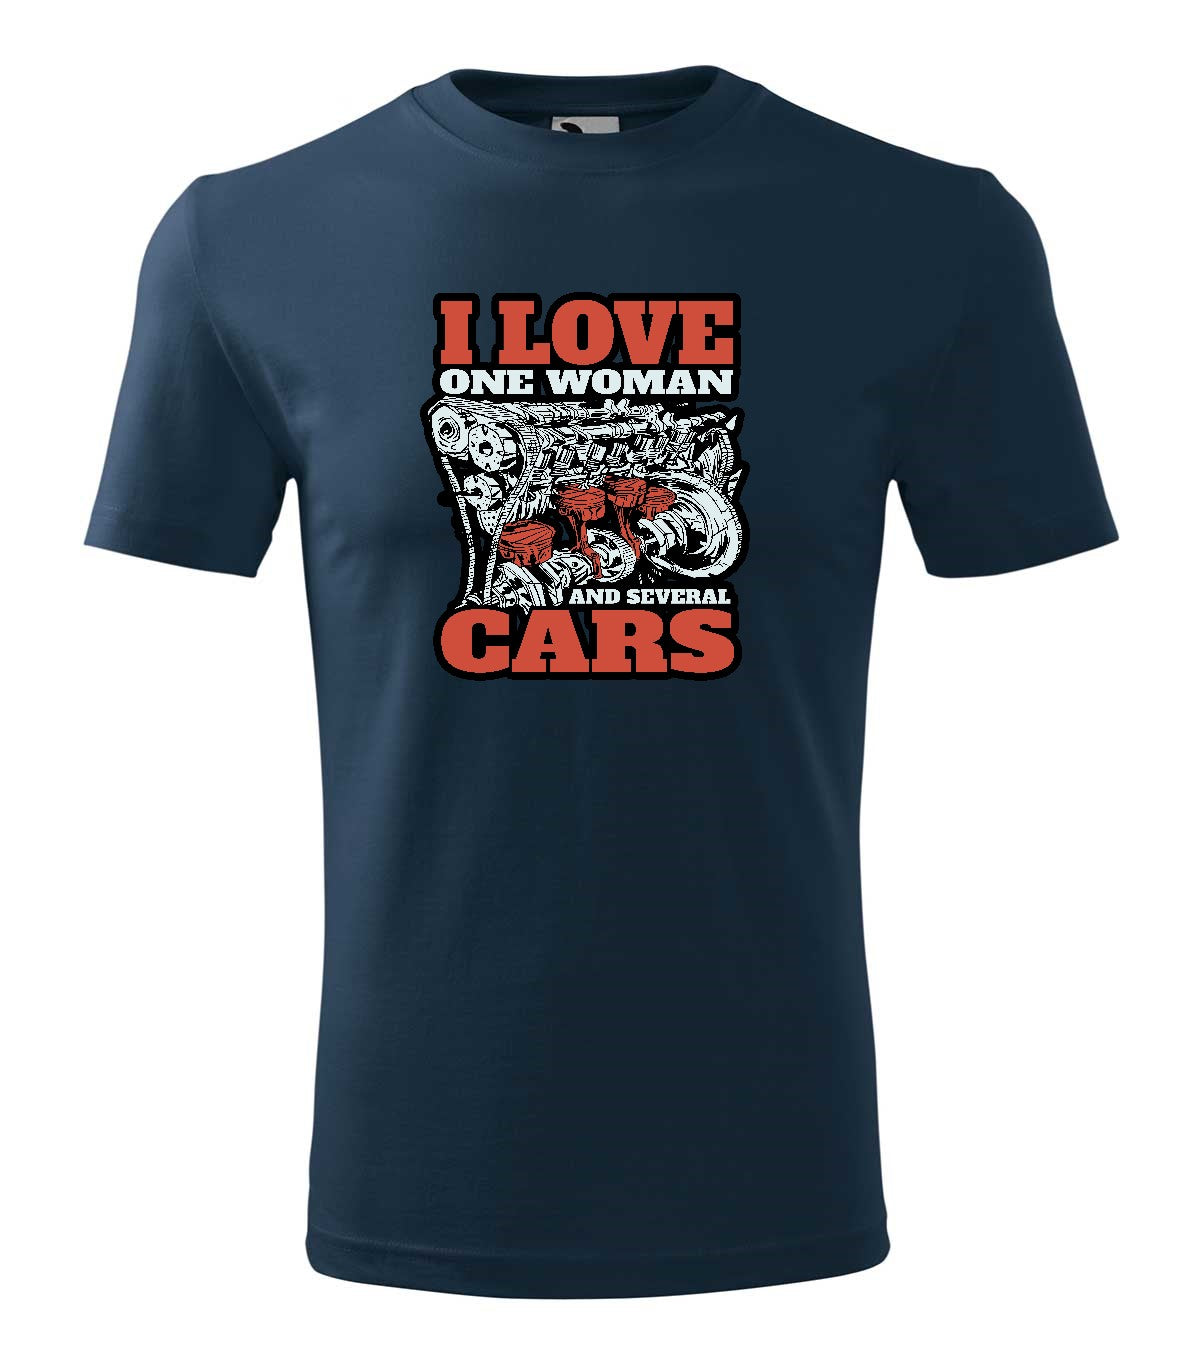 I love cars férfi póló